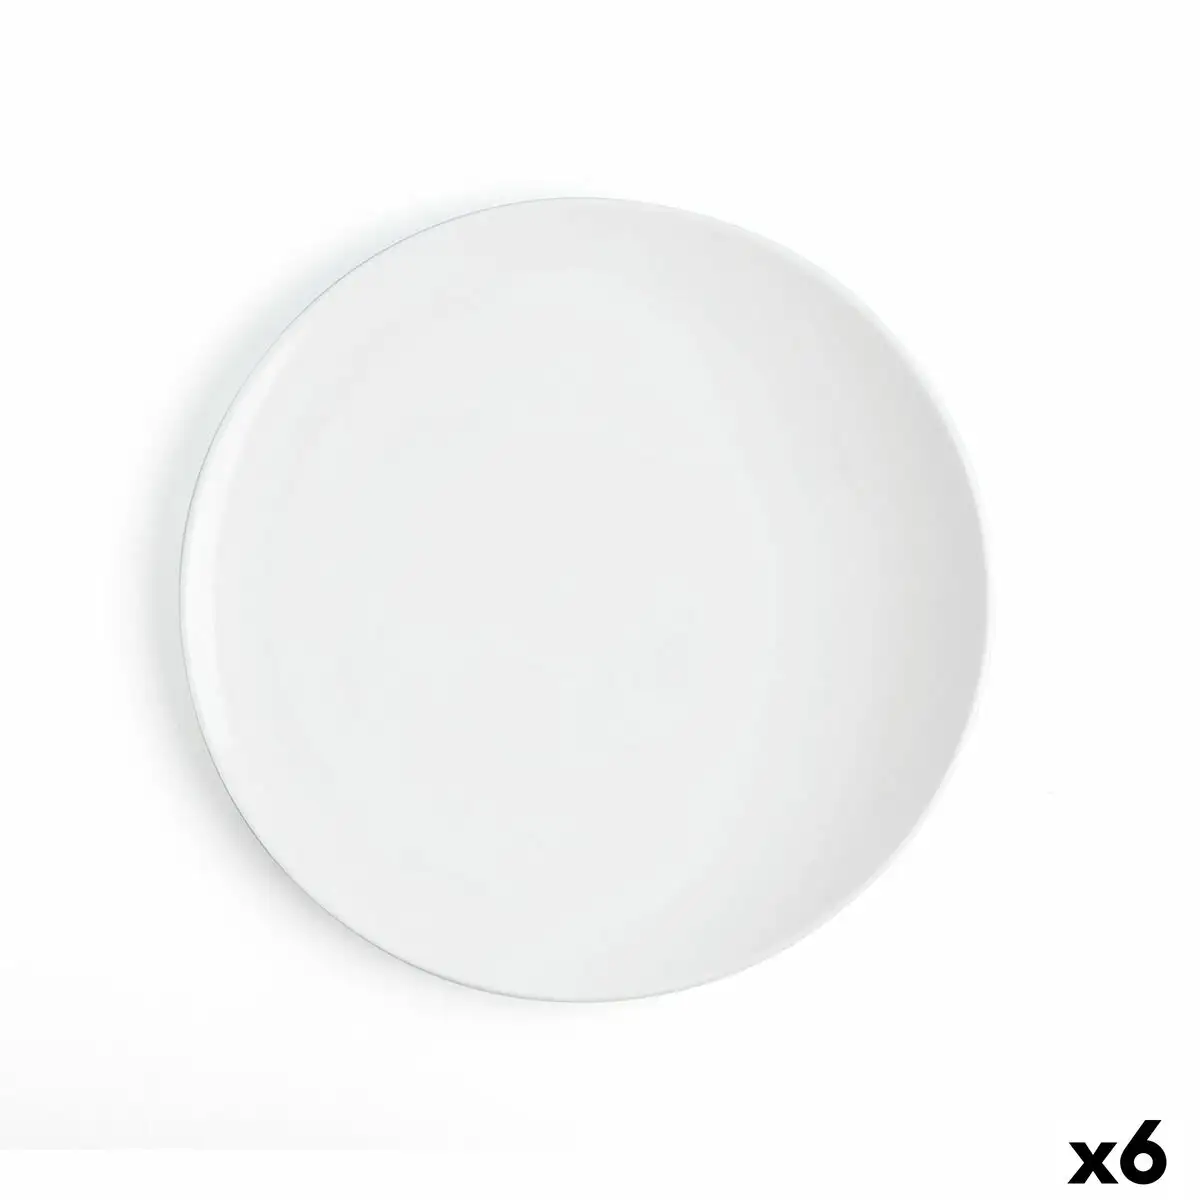 Assiette plate ariane coupe ceramique blanc o 31 cm 6 unites _4277. DIAYTAR SENEGAL - Votre Destination Shopping de Choix. Explorez notre boutique en ligne et découvrez des trésors qui reflètent votre style et votre passion pour l'authenticité.